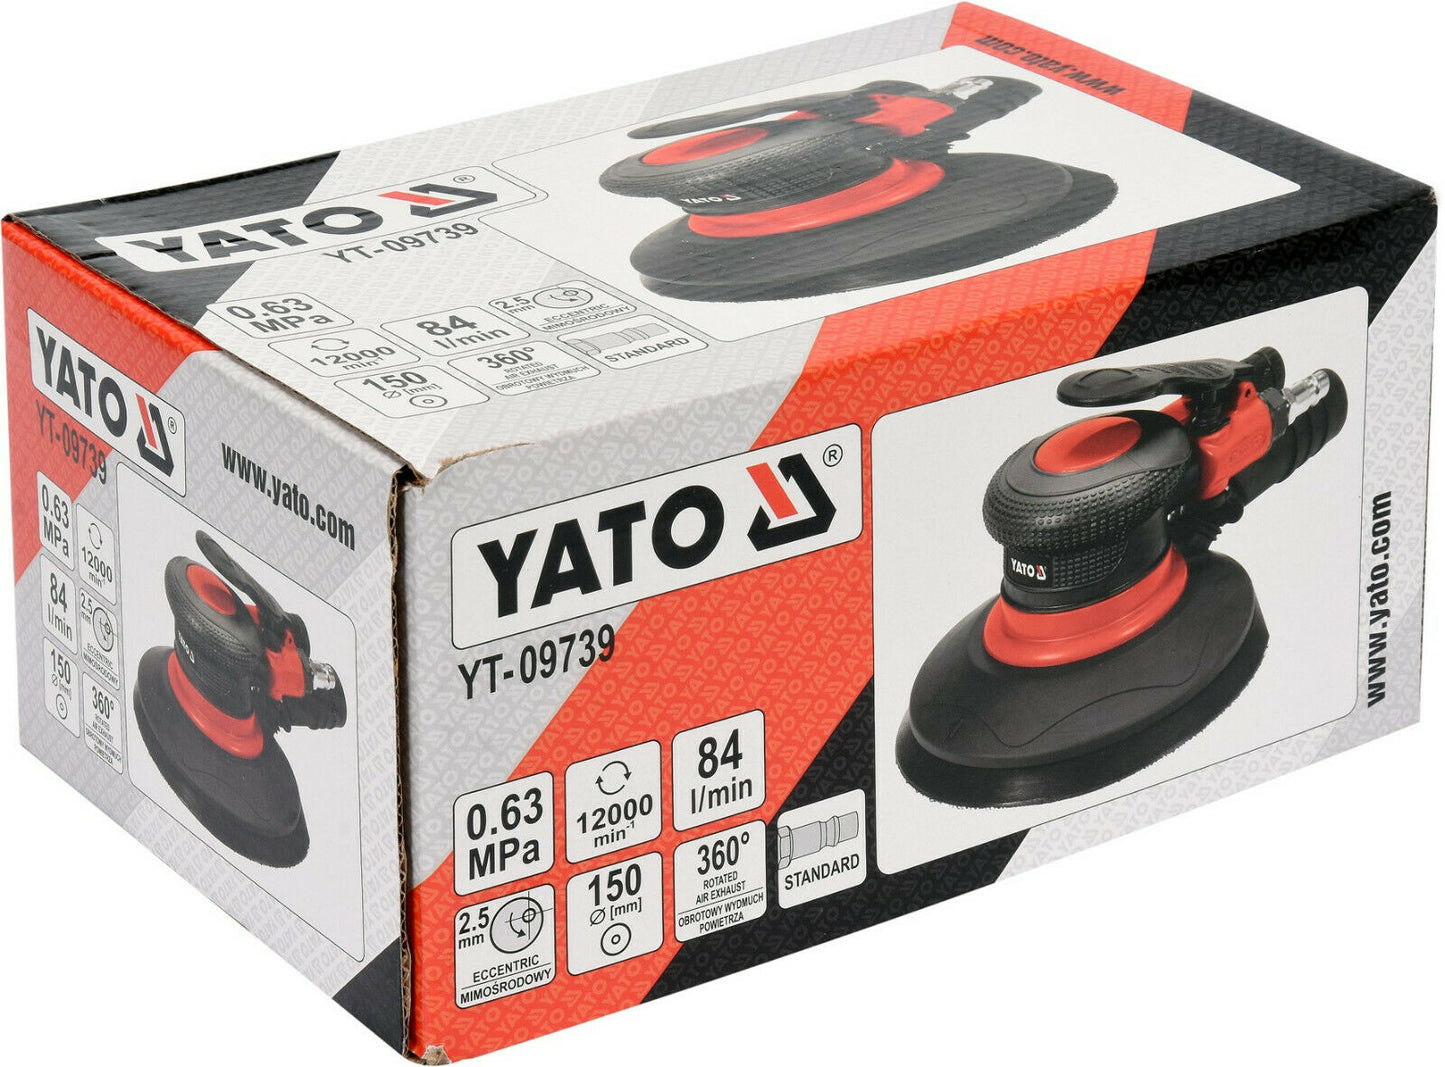 YATO YT-09739 Druckluft Excenterschleifer Schleifscheibe 150mm Schleifmaschine